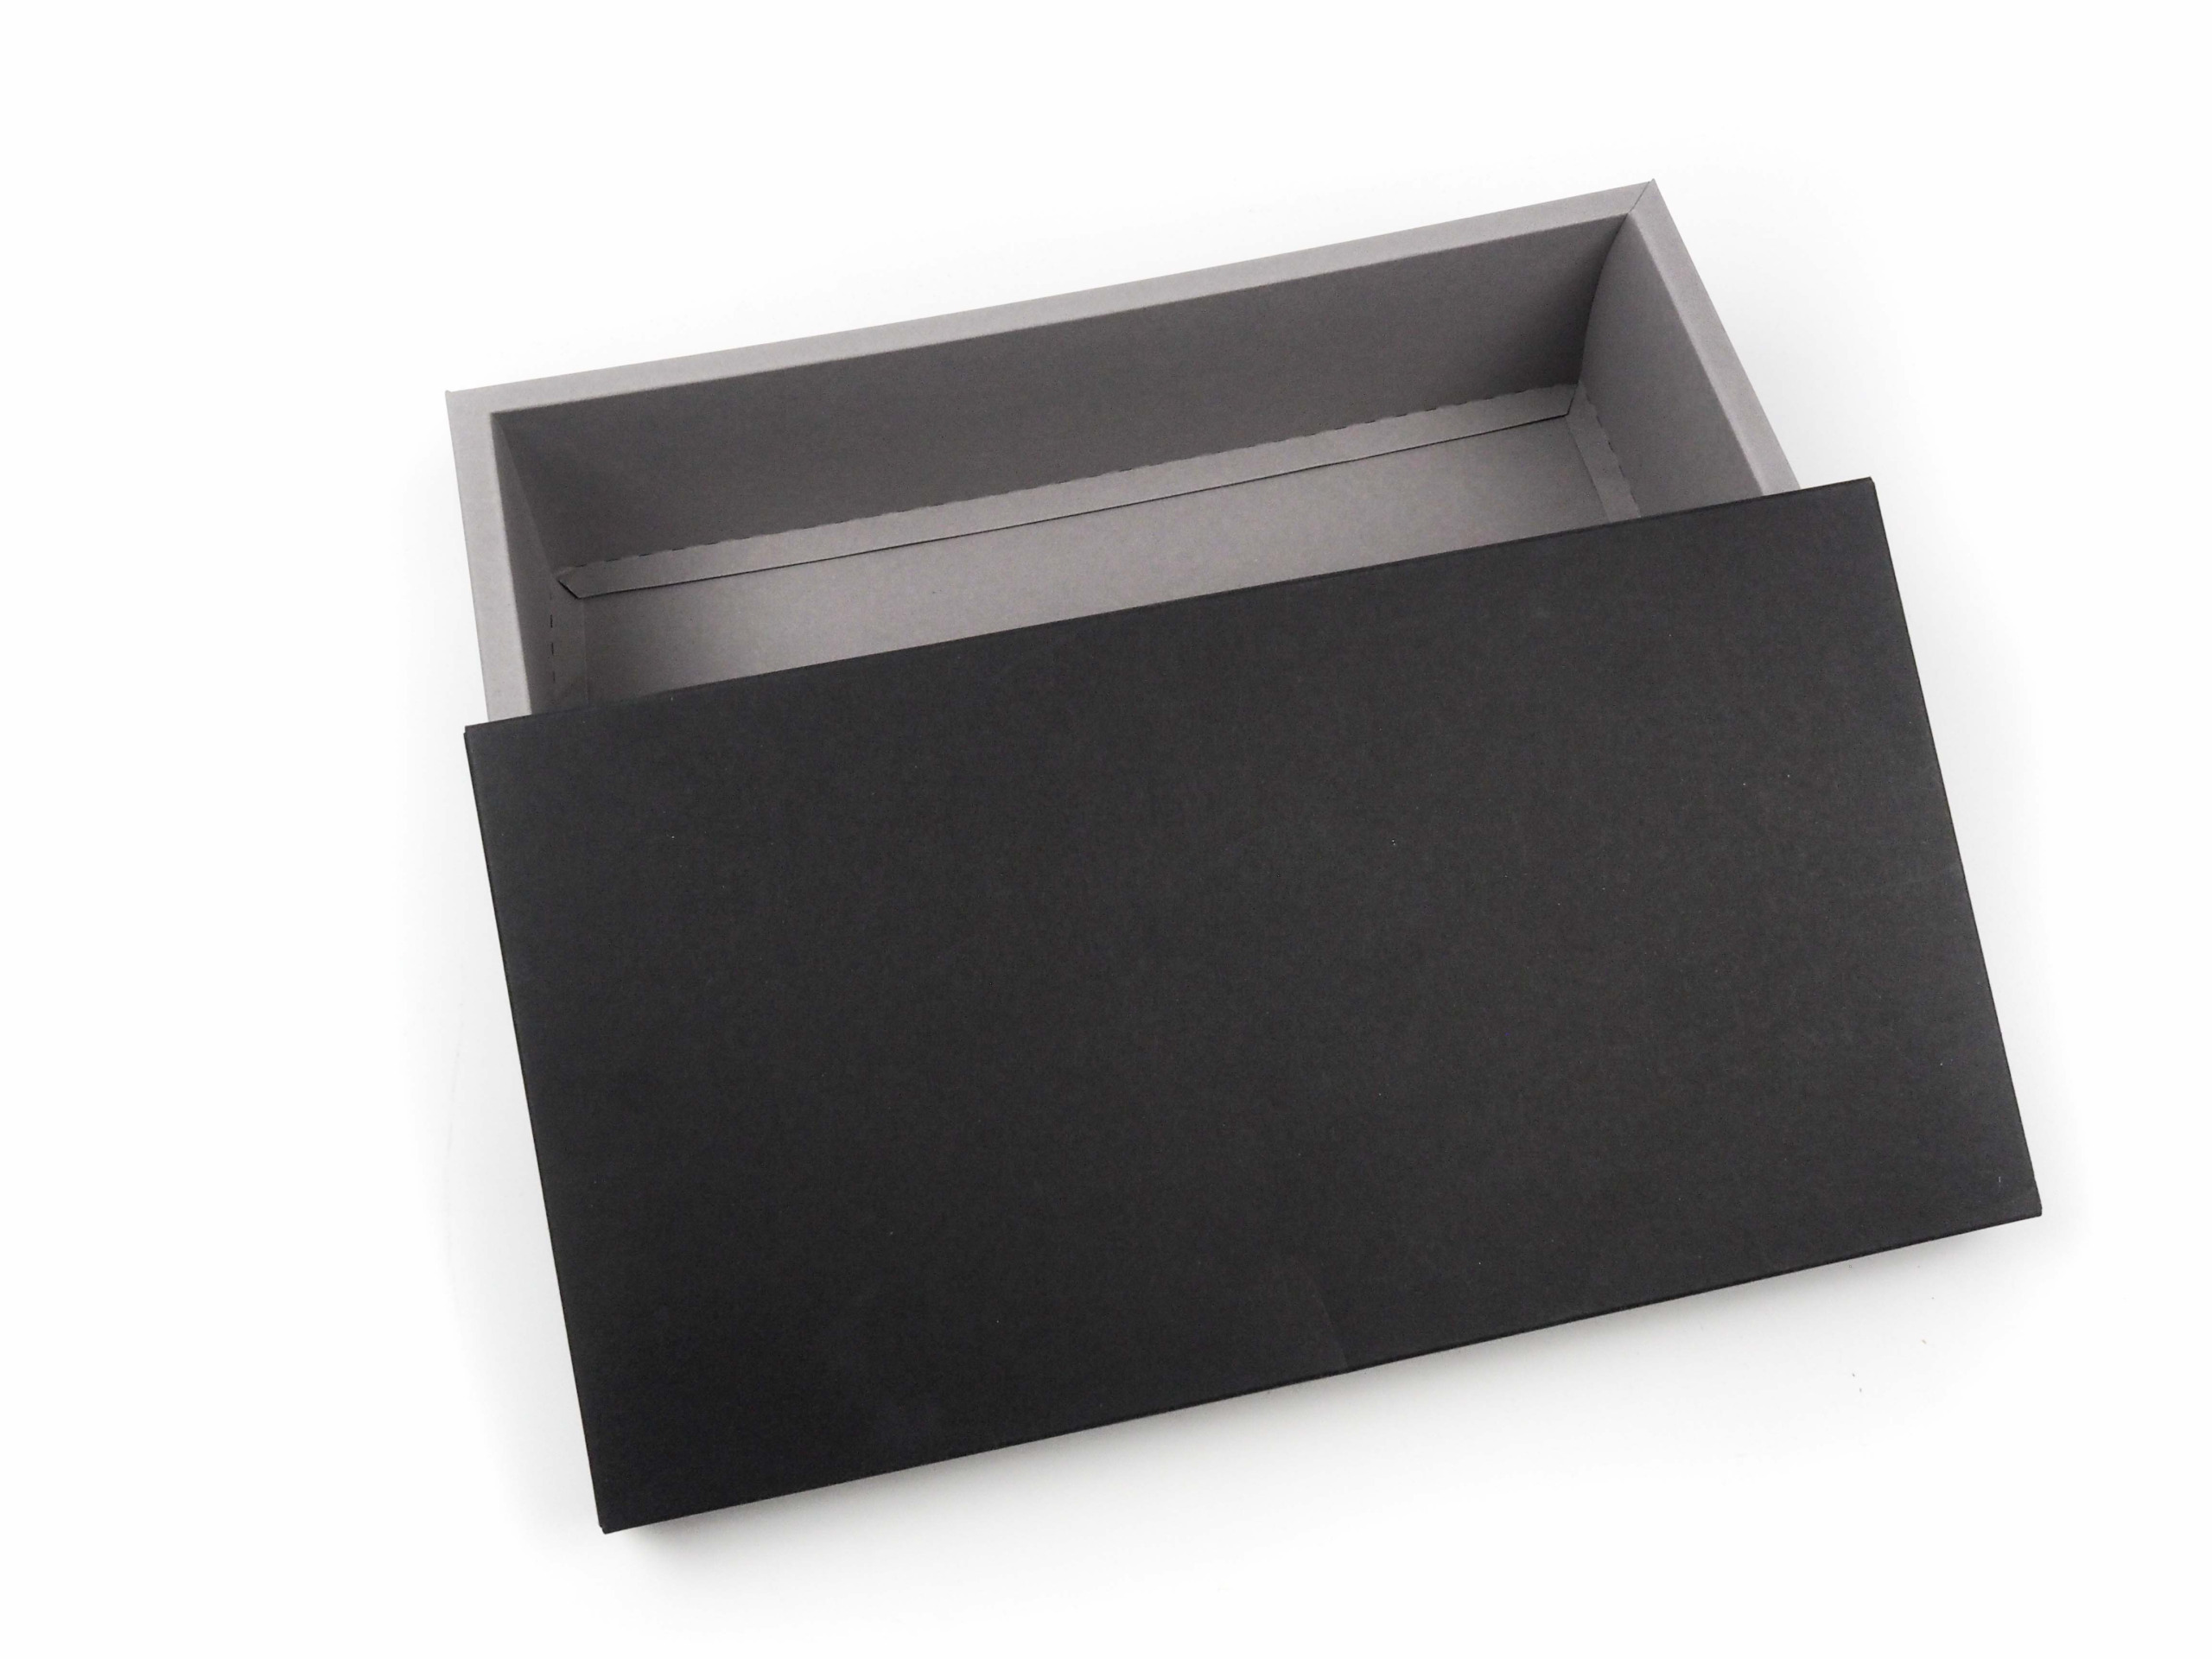 Dárková krabička byla vyrobena s požadavkem ve dvou barevném provedení s otevíráním víko/dno.